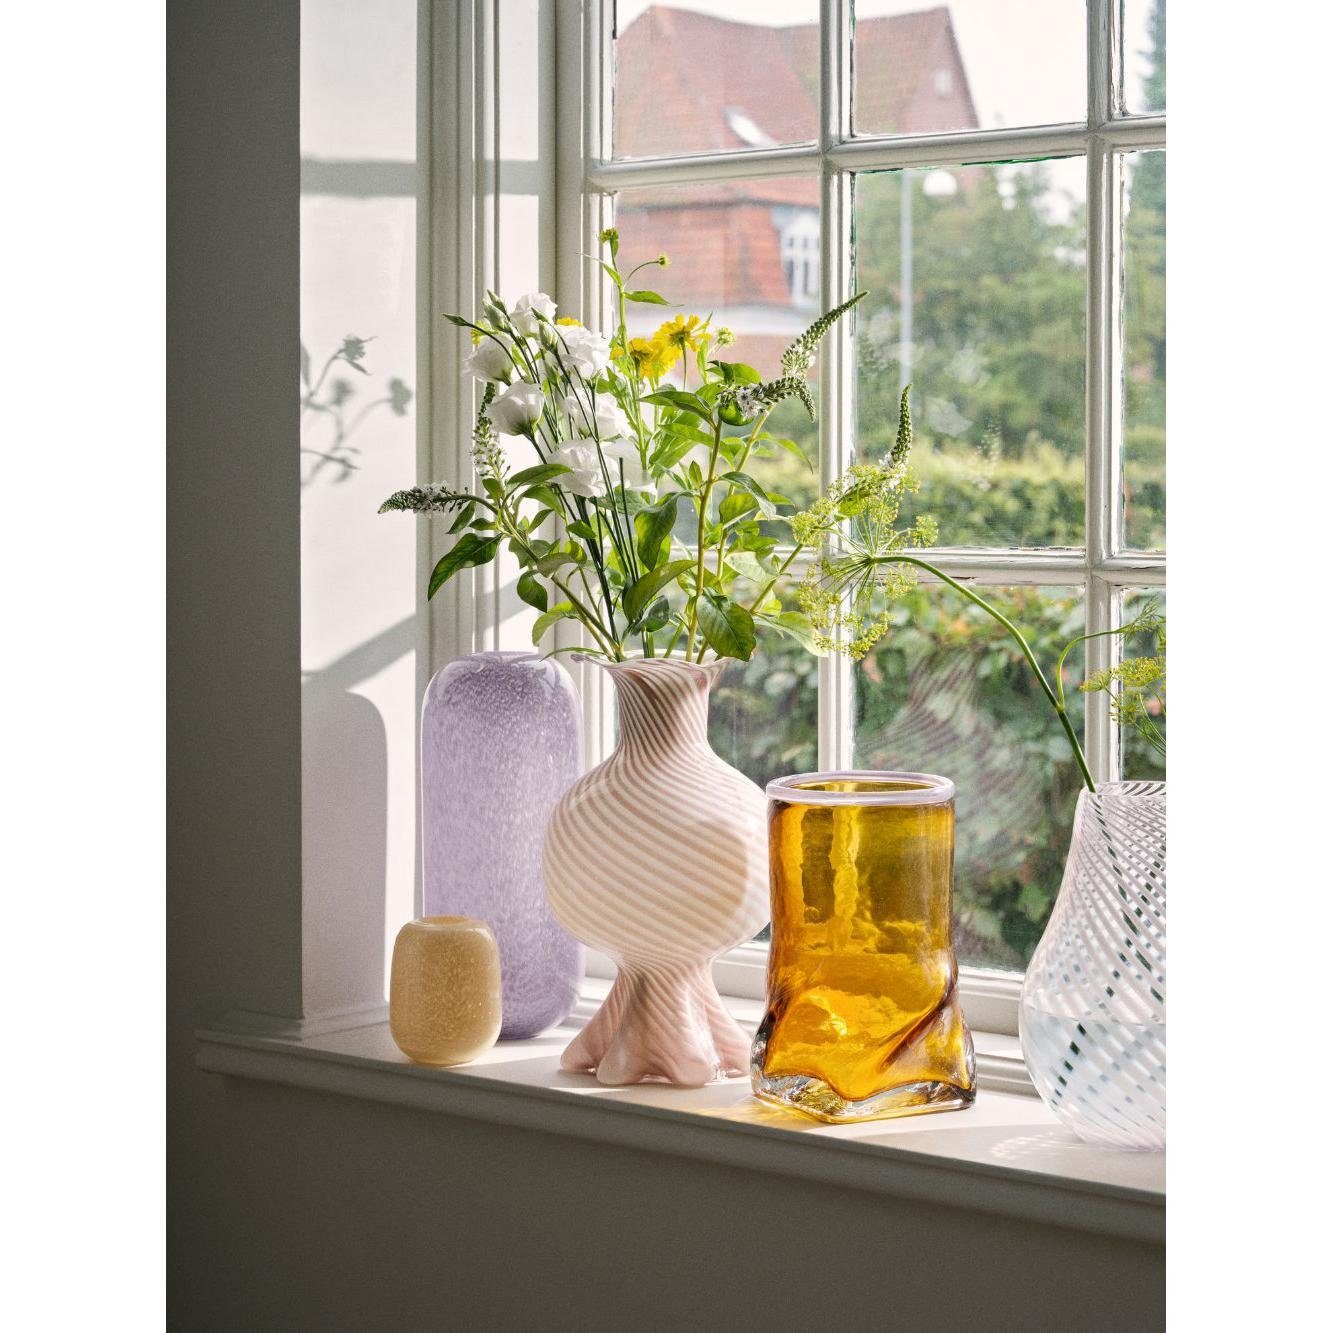 Broste Copenhagen Dekovase cm) Vase Fairy Glas Pink/Off-White (17,5x30 Mella